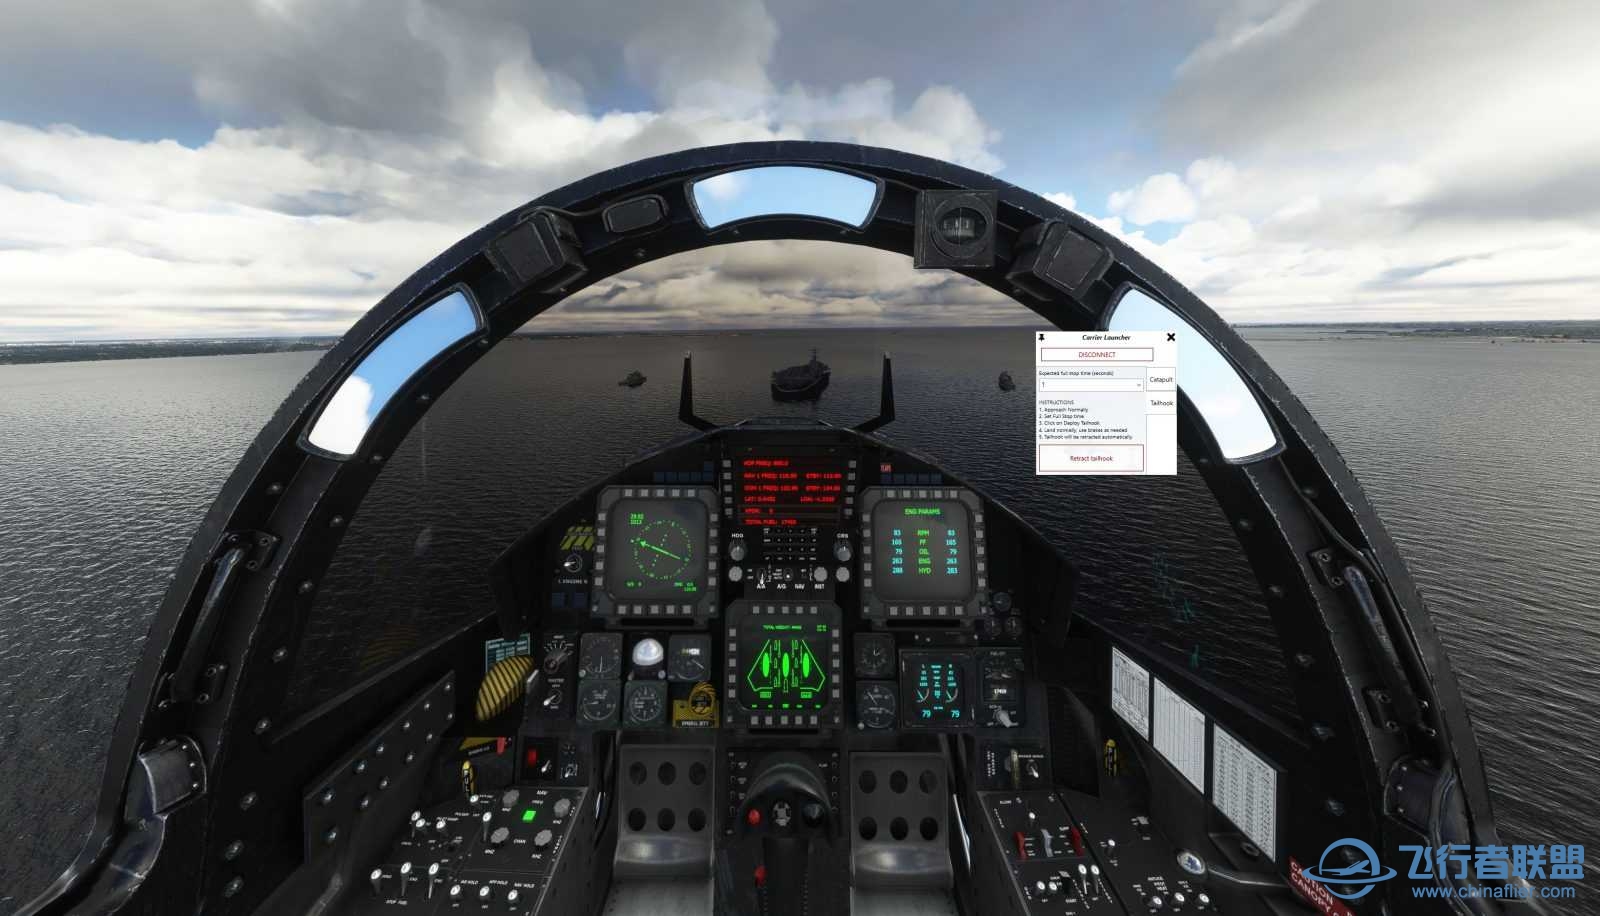 Miltech Simulations 发布美国乔治·H·W·布什航空母舰-8133 